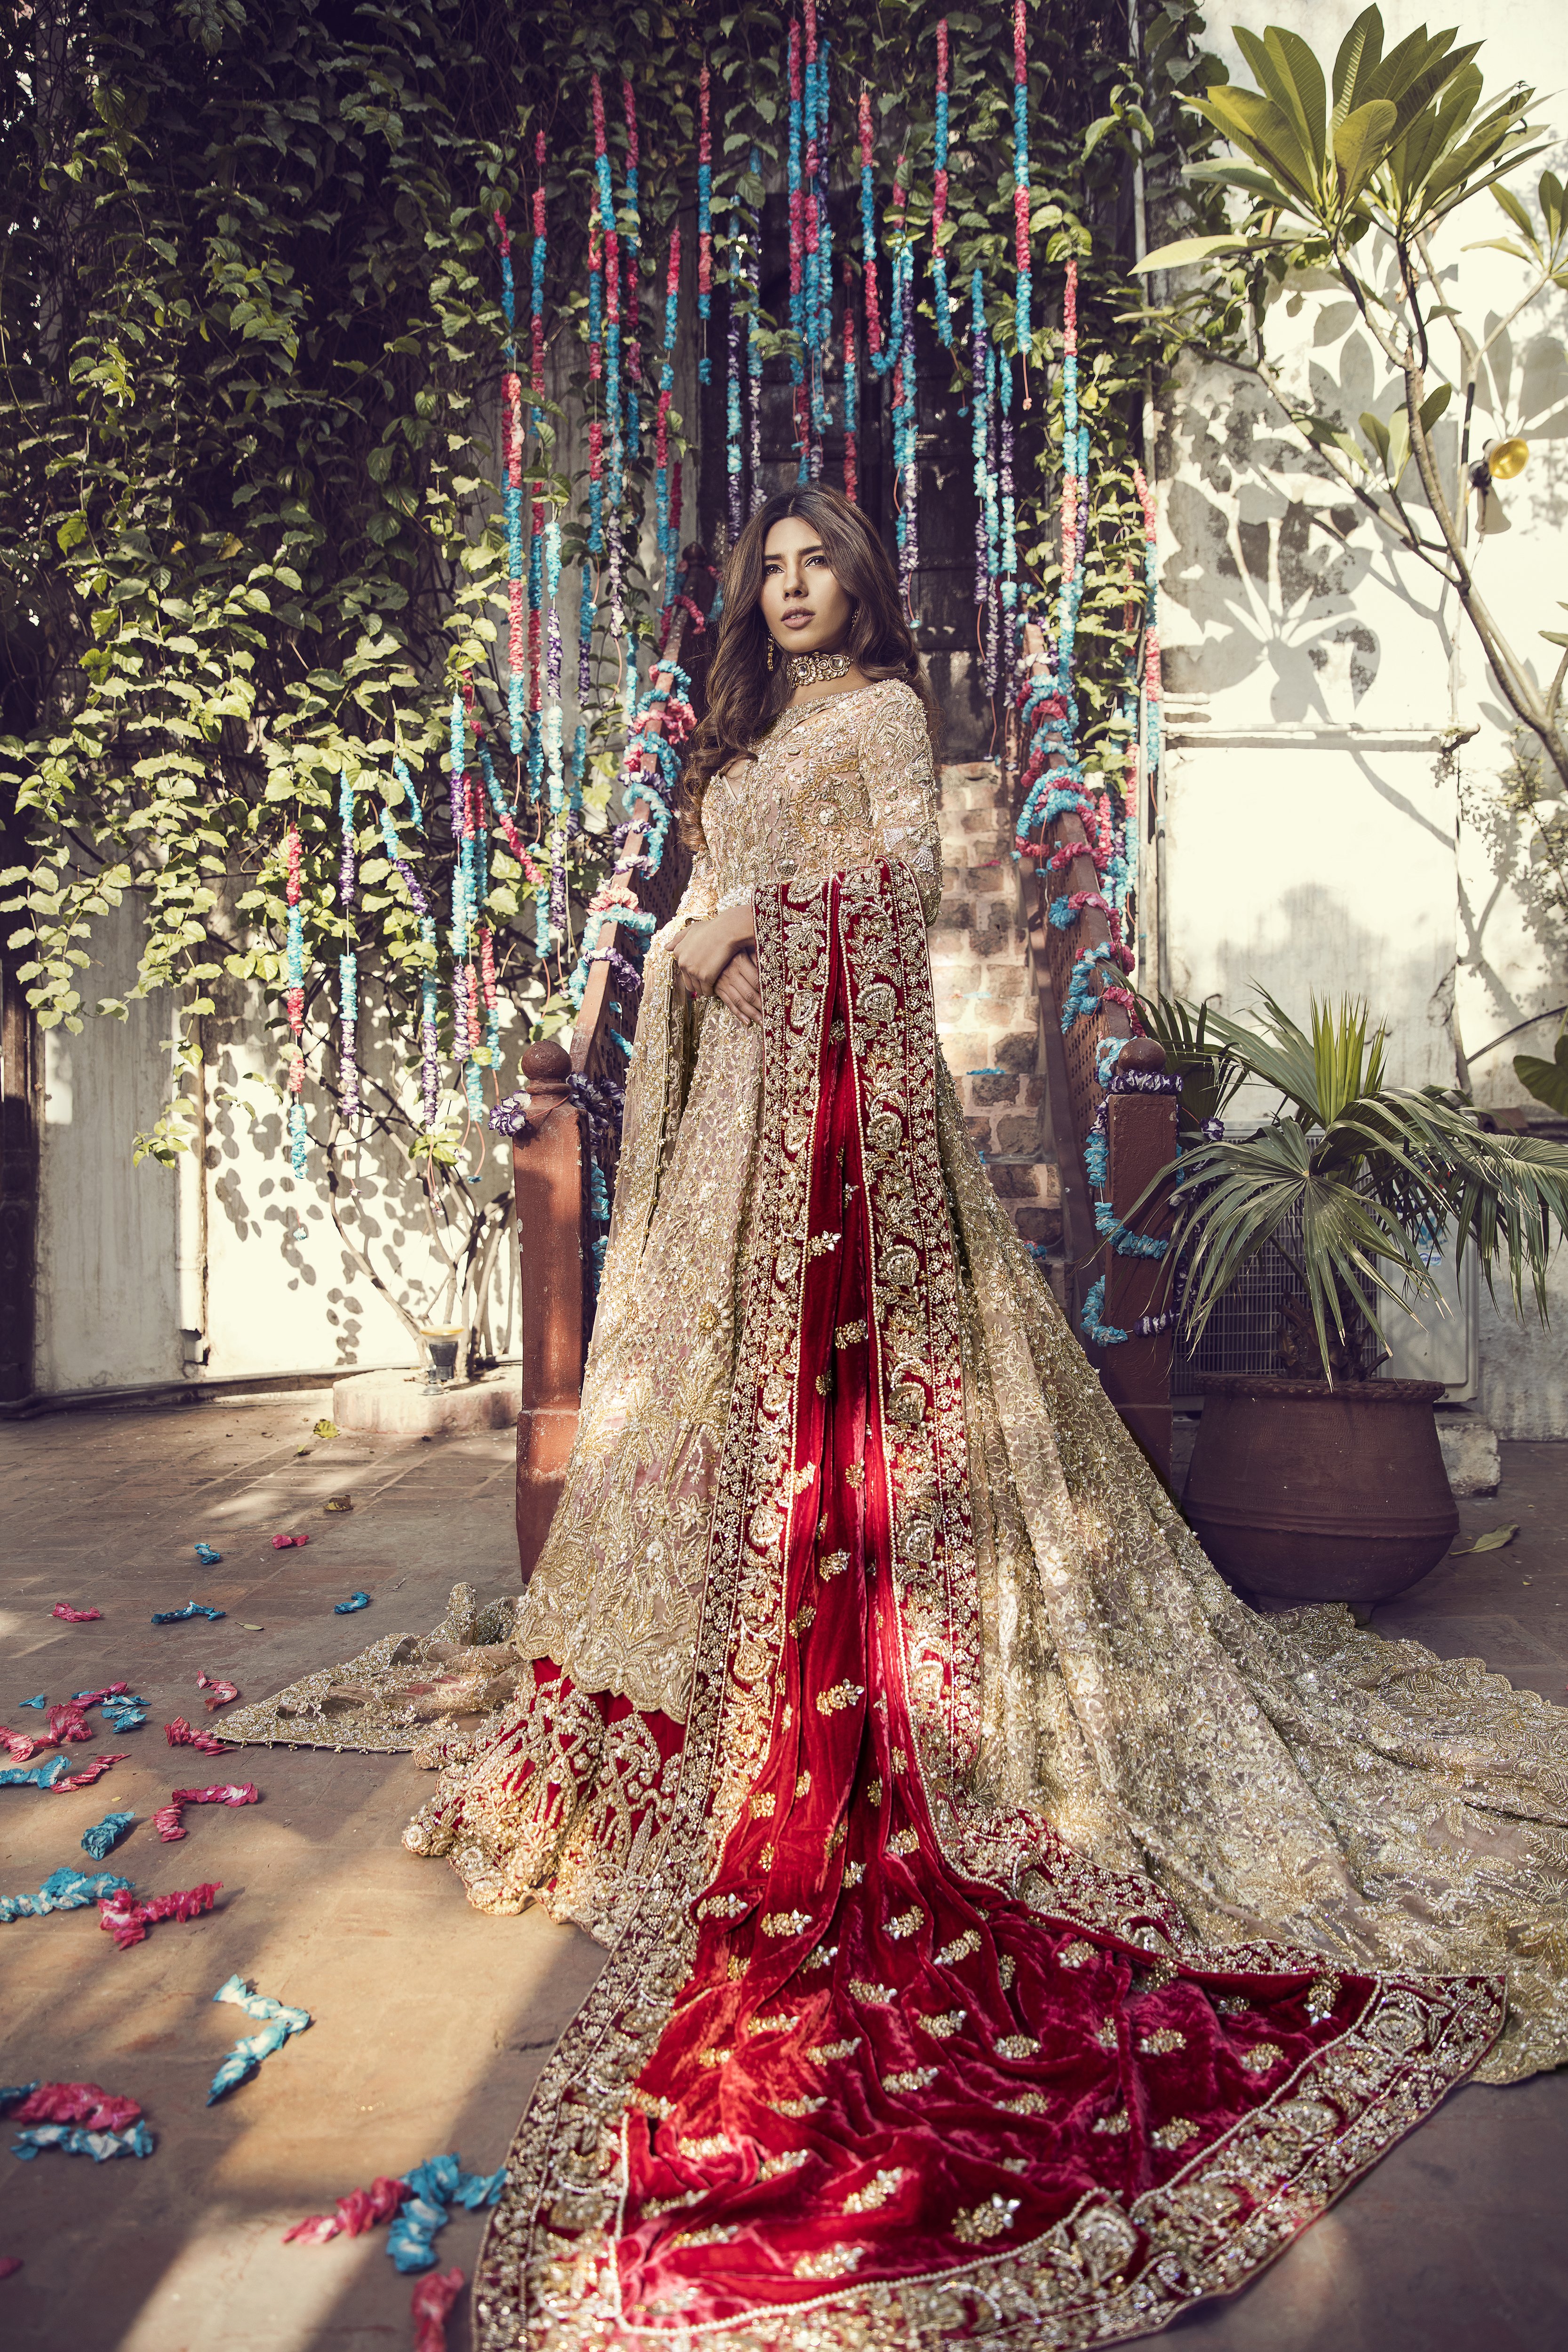 Beautiful heavily embroidered Pakistani bridal dress by Suffuse by Sana Yasir